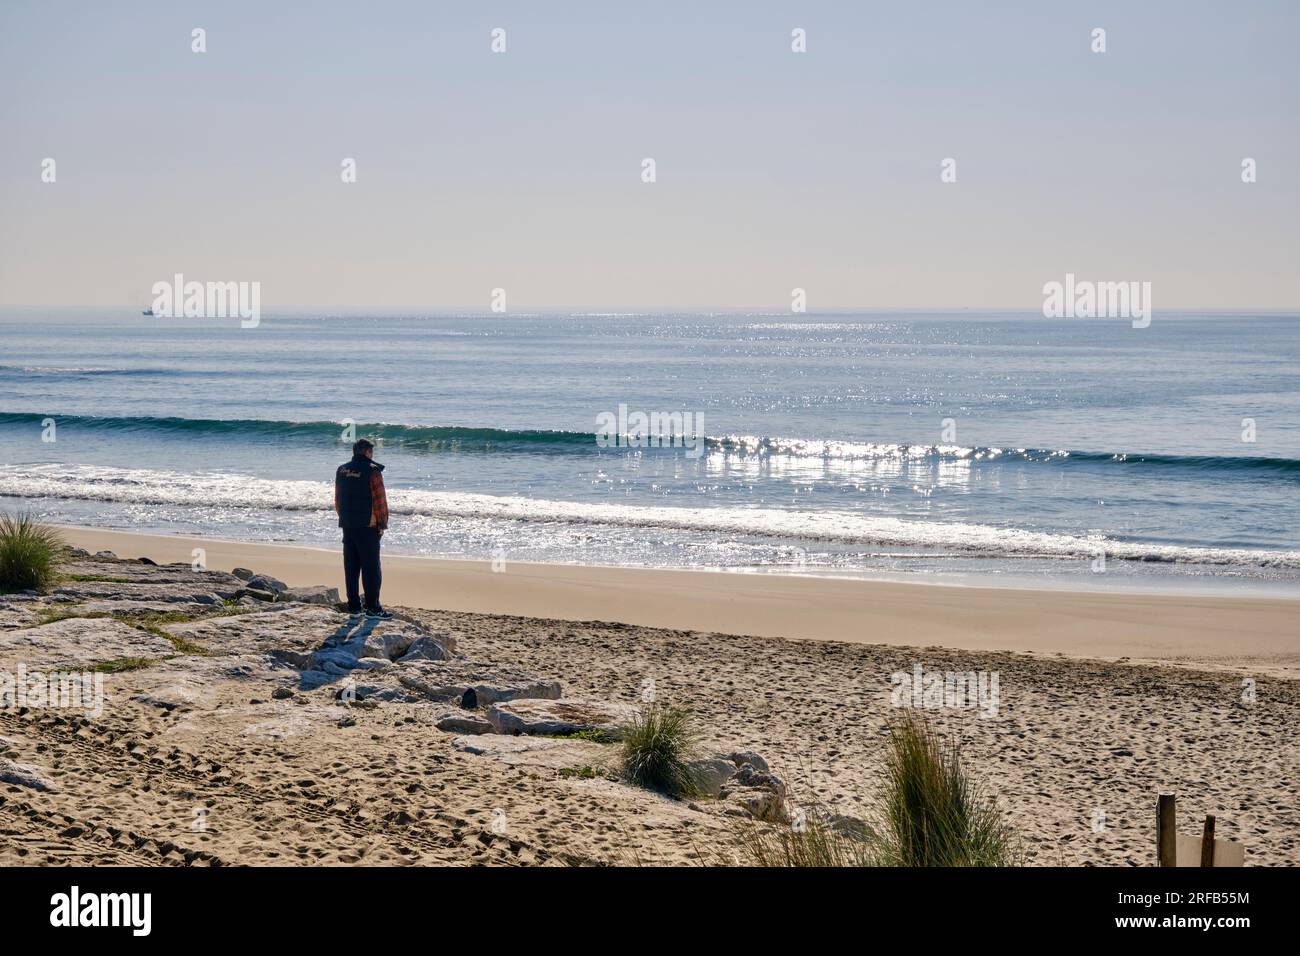 The Atlantic Ocean at Costa da Caparica. Portugal Stock Photo